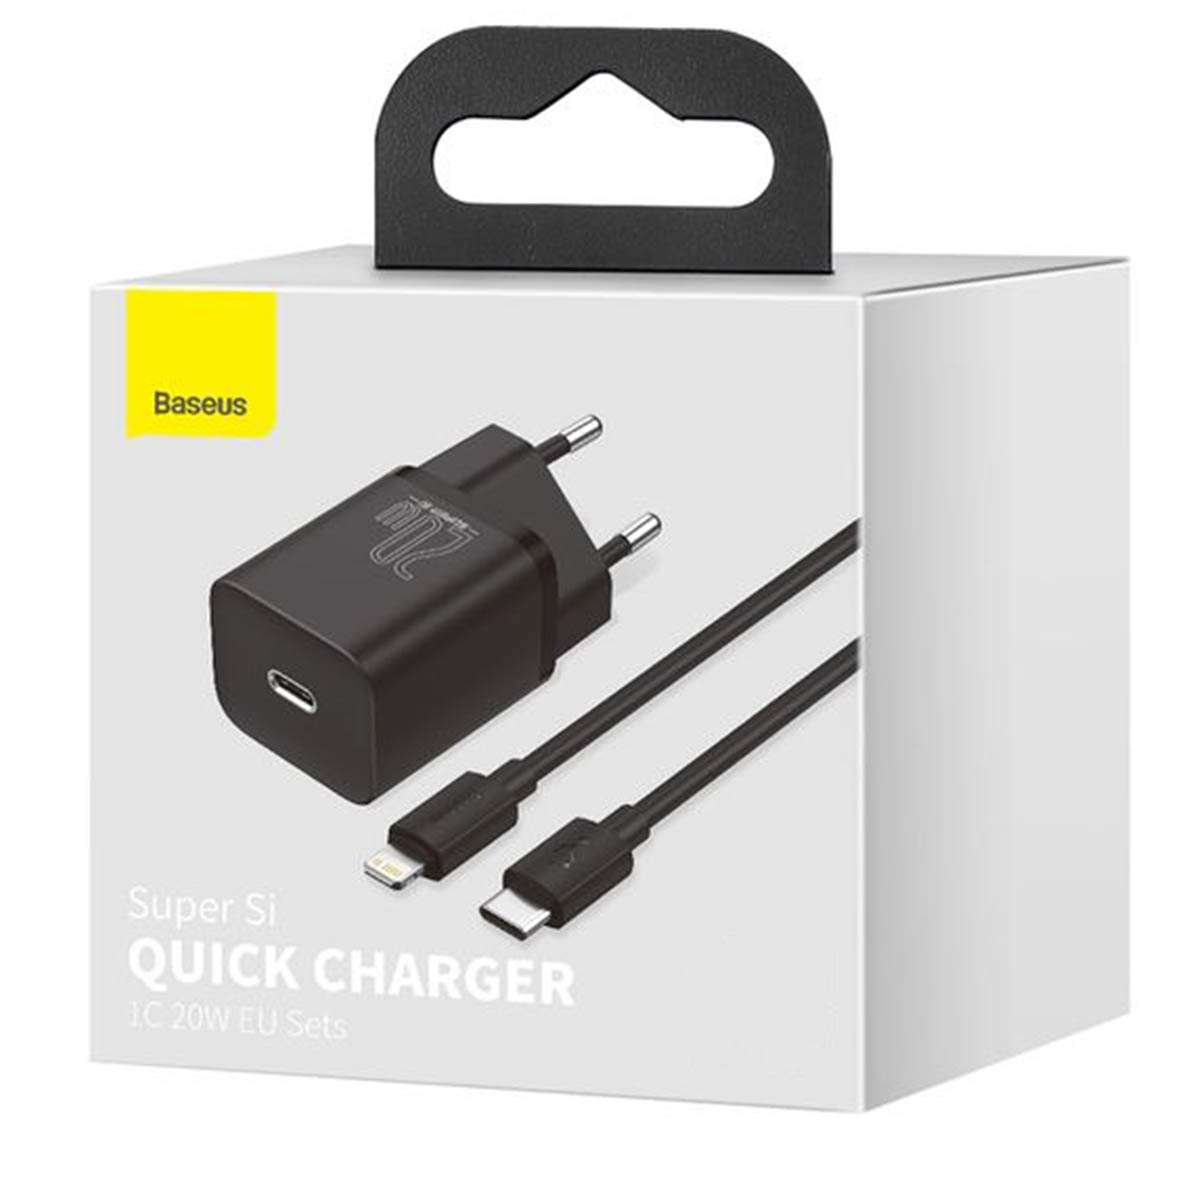 СЗУ (Сетевое зарядное устройство) BASEUS Super Si Quick Charger 1C 20W с кабелем USB Type-C на Lightning 8 pin, цвет черный